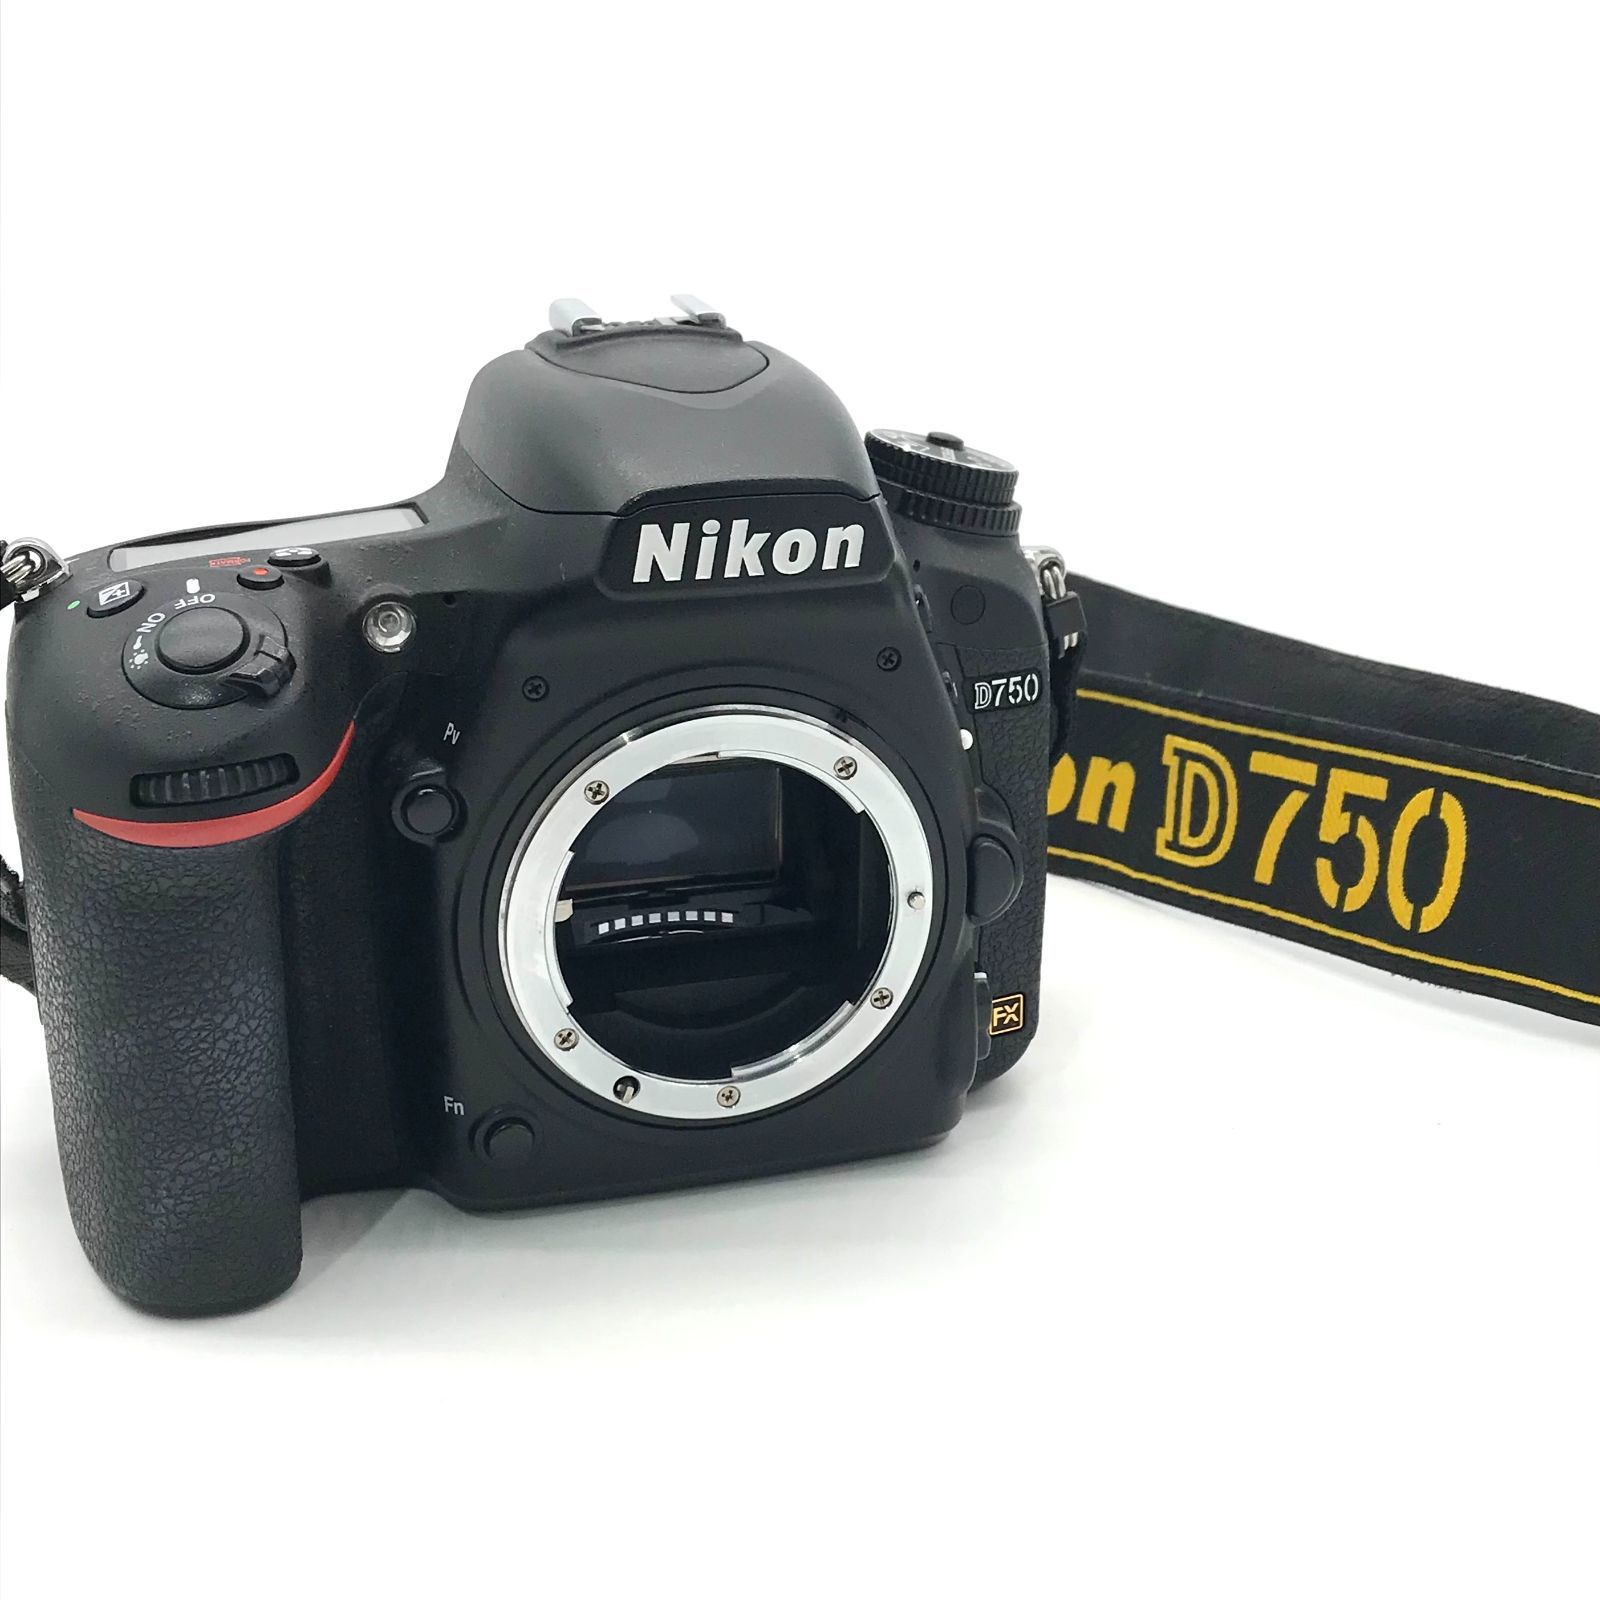 ▽【動作確認済み】Nikon/ニコン D750 ボディ 一眼レフカメラ ブラック ...